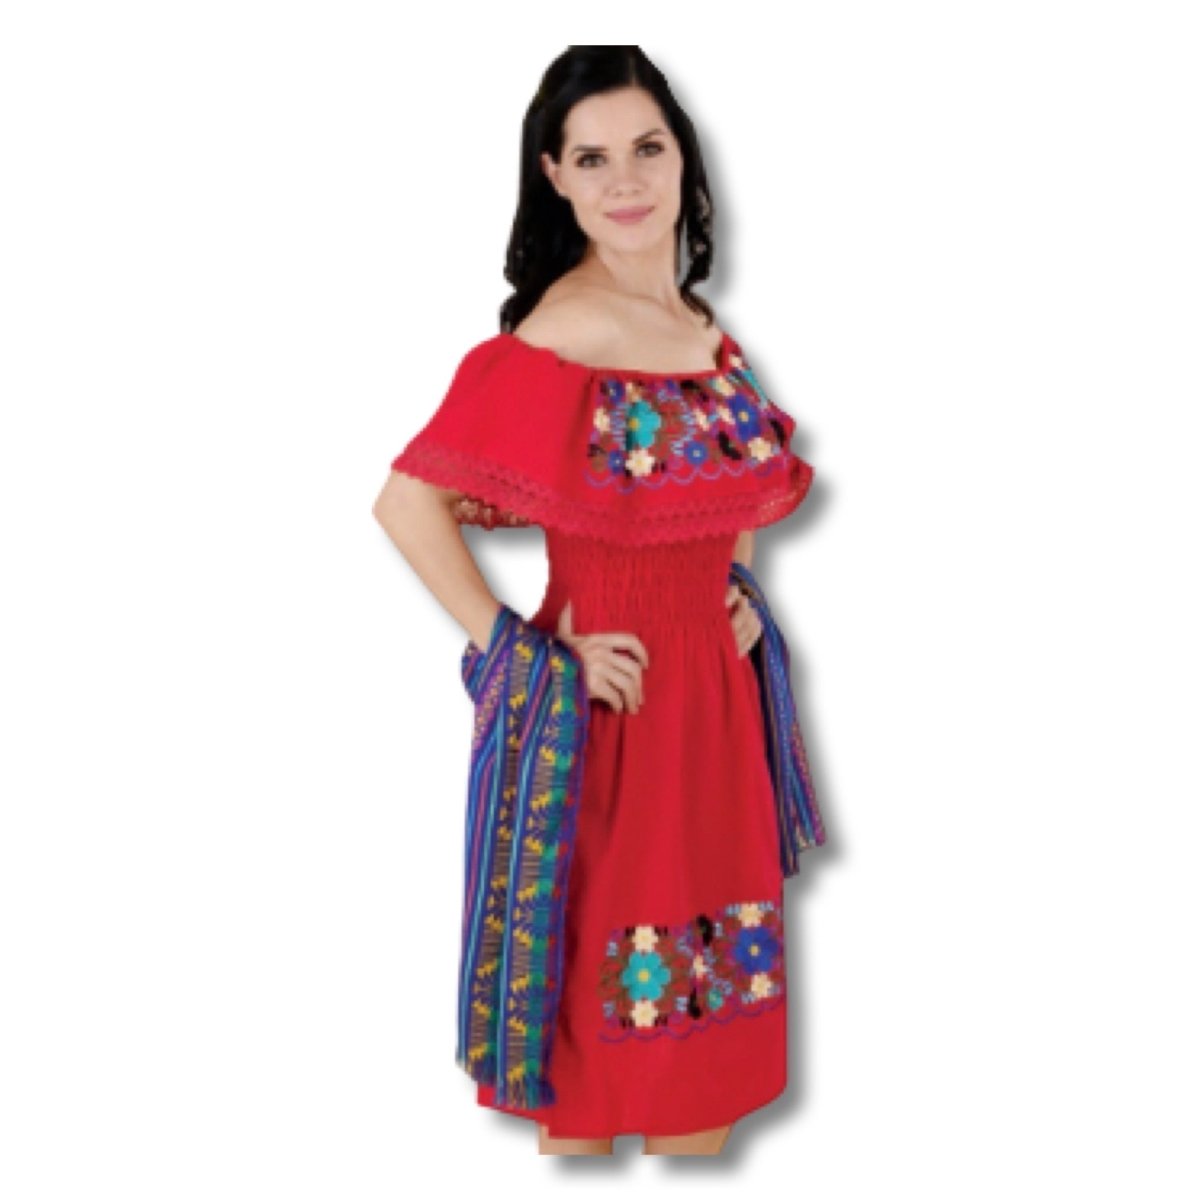 Vestido artesanal bordado - CharroAzteca.com